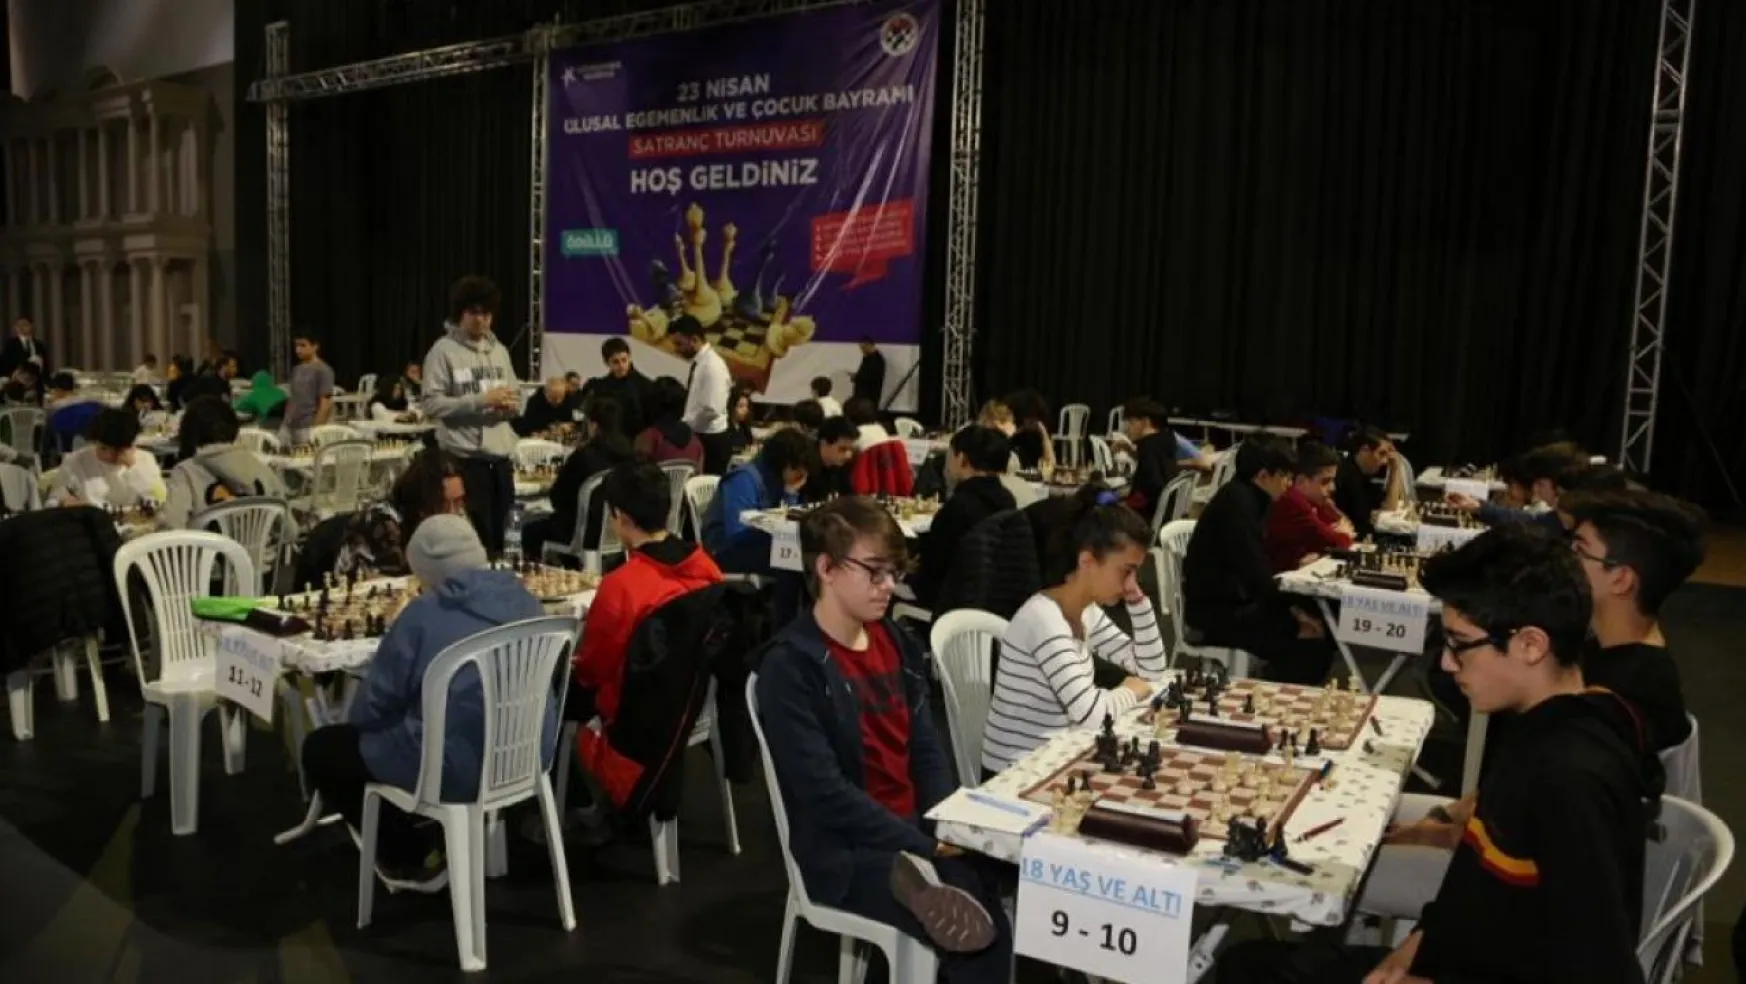 23 Nisan satranç turnuvası heyecanı